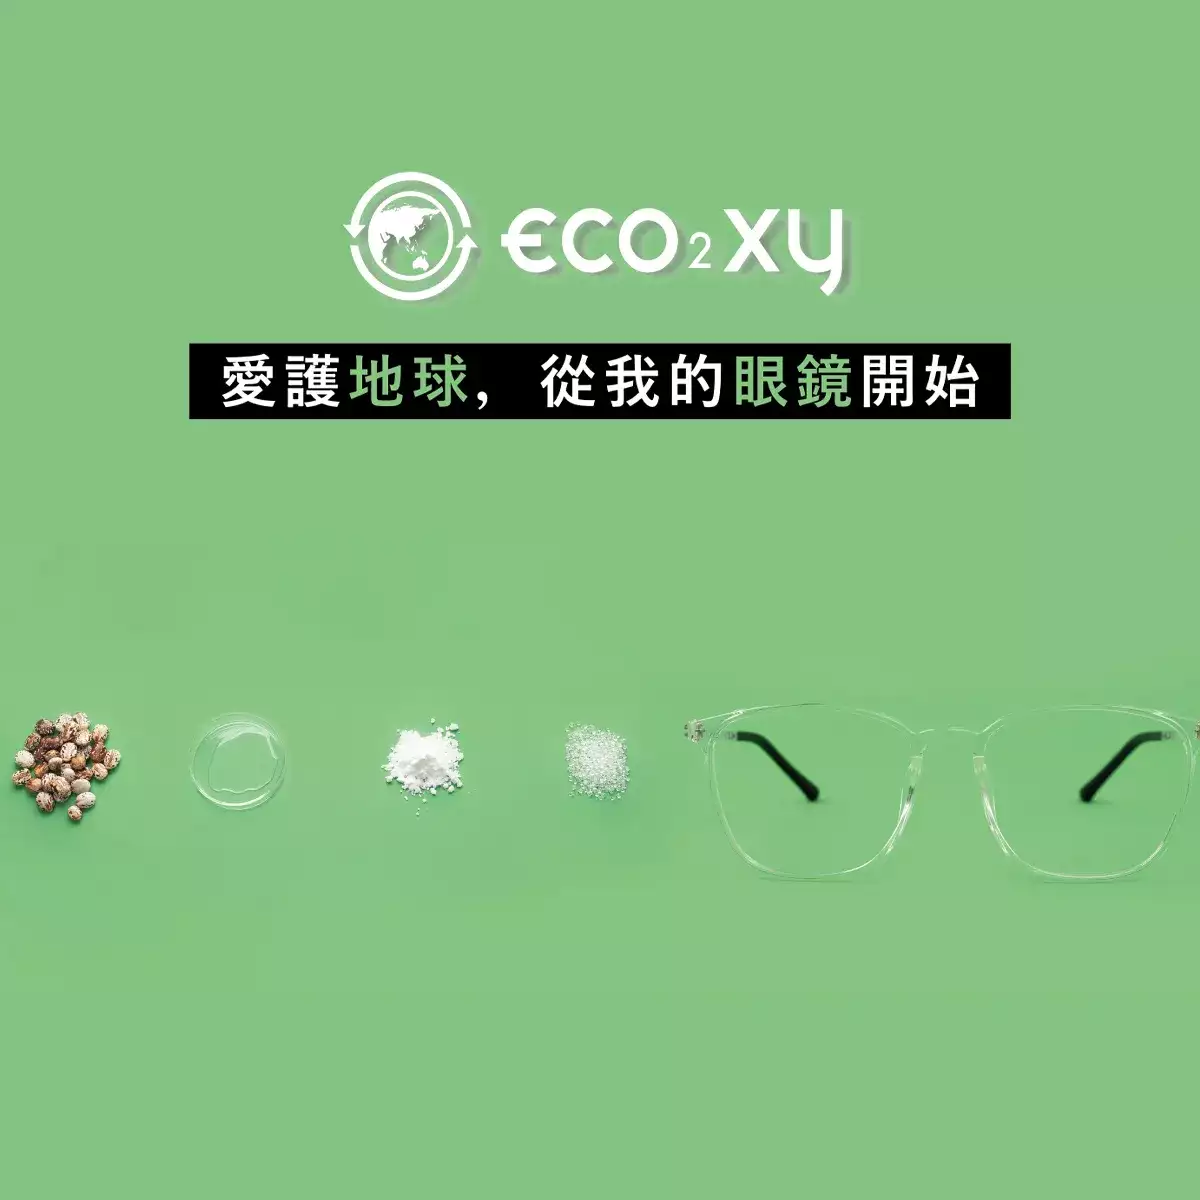 eco²xy